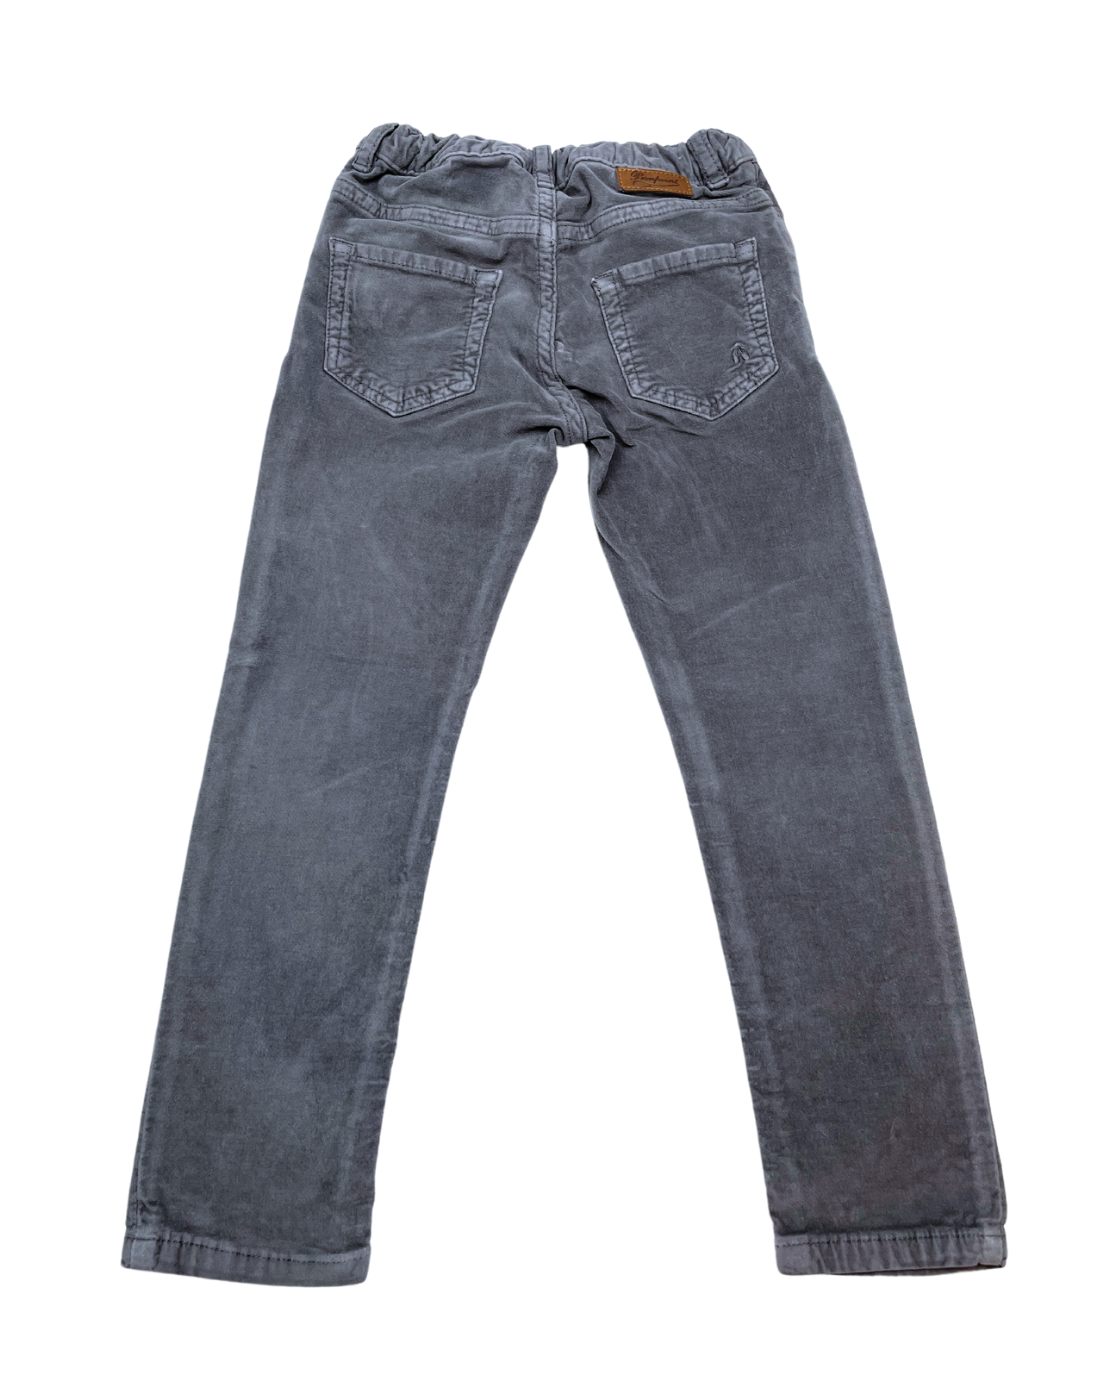 BONPOINT - Pantalon en velours gris foncé élastiqué - 4 ans